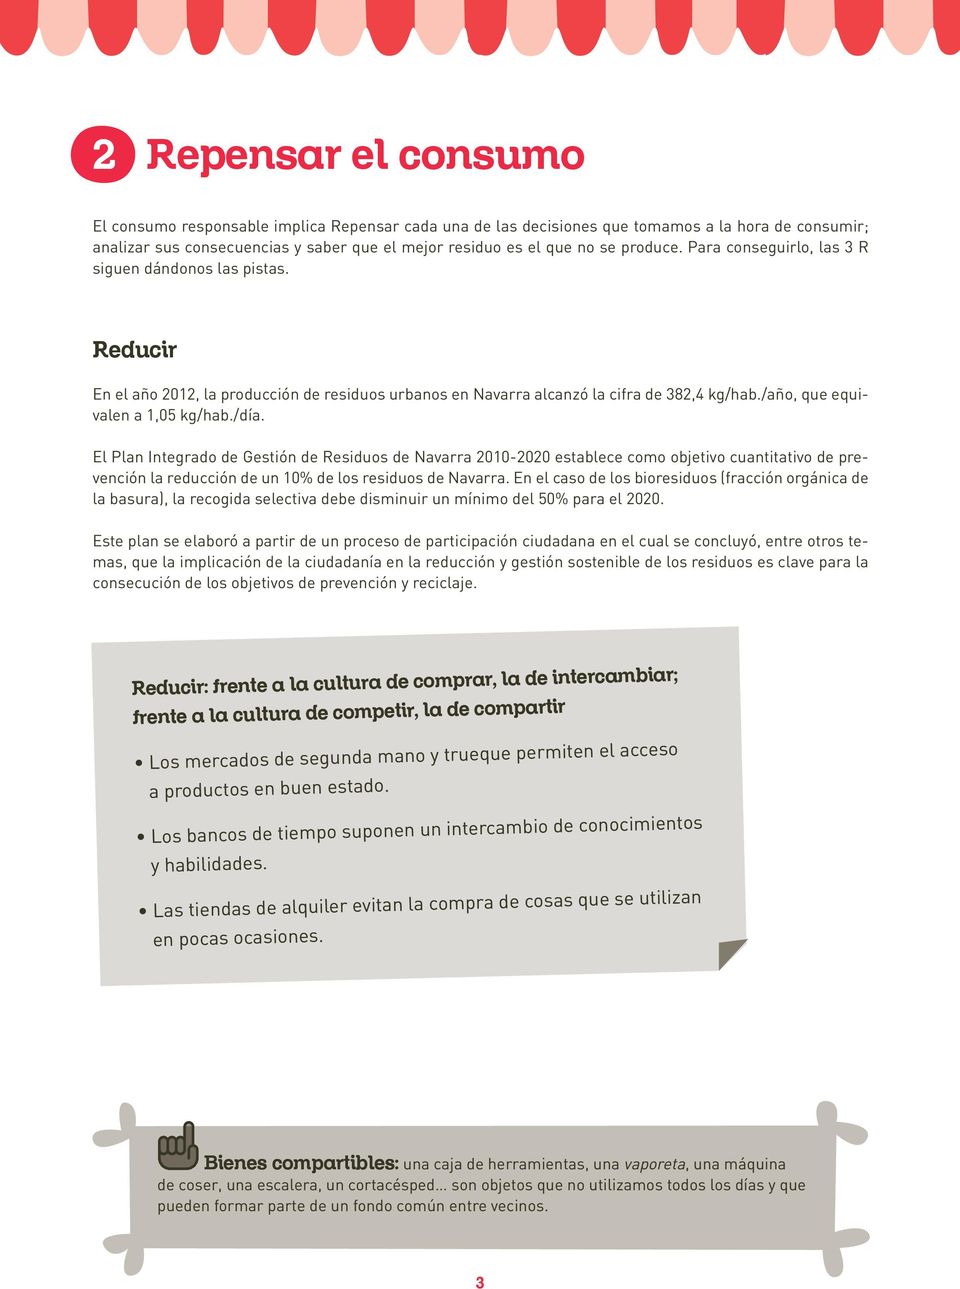 /día. El Plan Integrado de Gestión de Residuos de Navarra 2010-2020 establece como objetivo cuantitativo de prevención la reducción de un 10% de los residuos de Navarra.